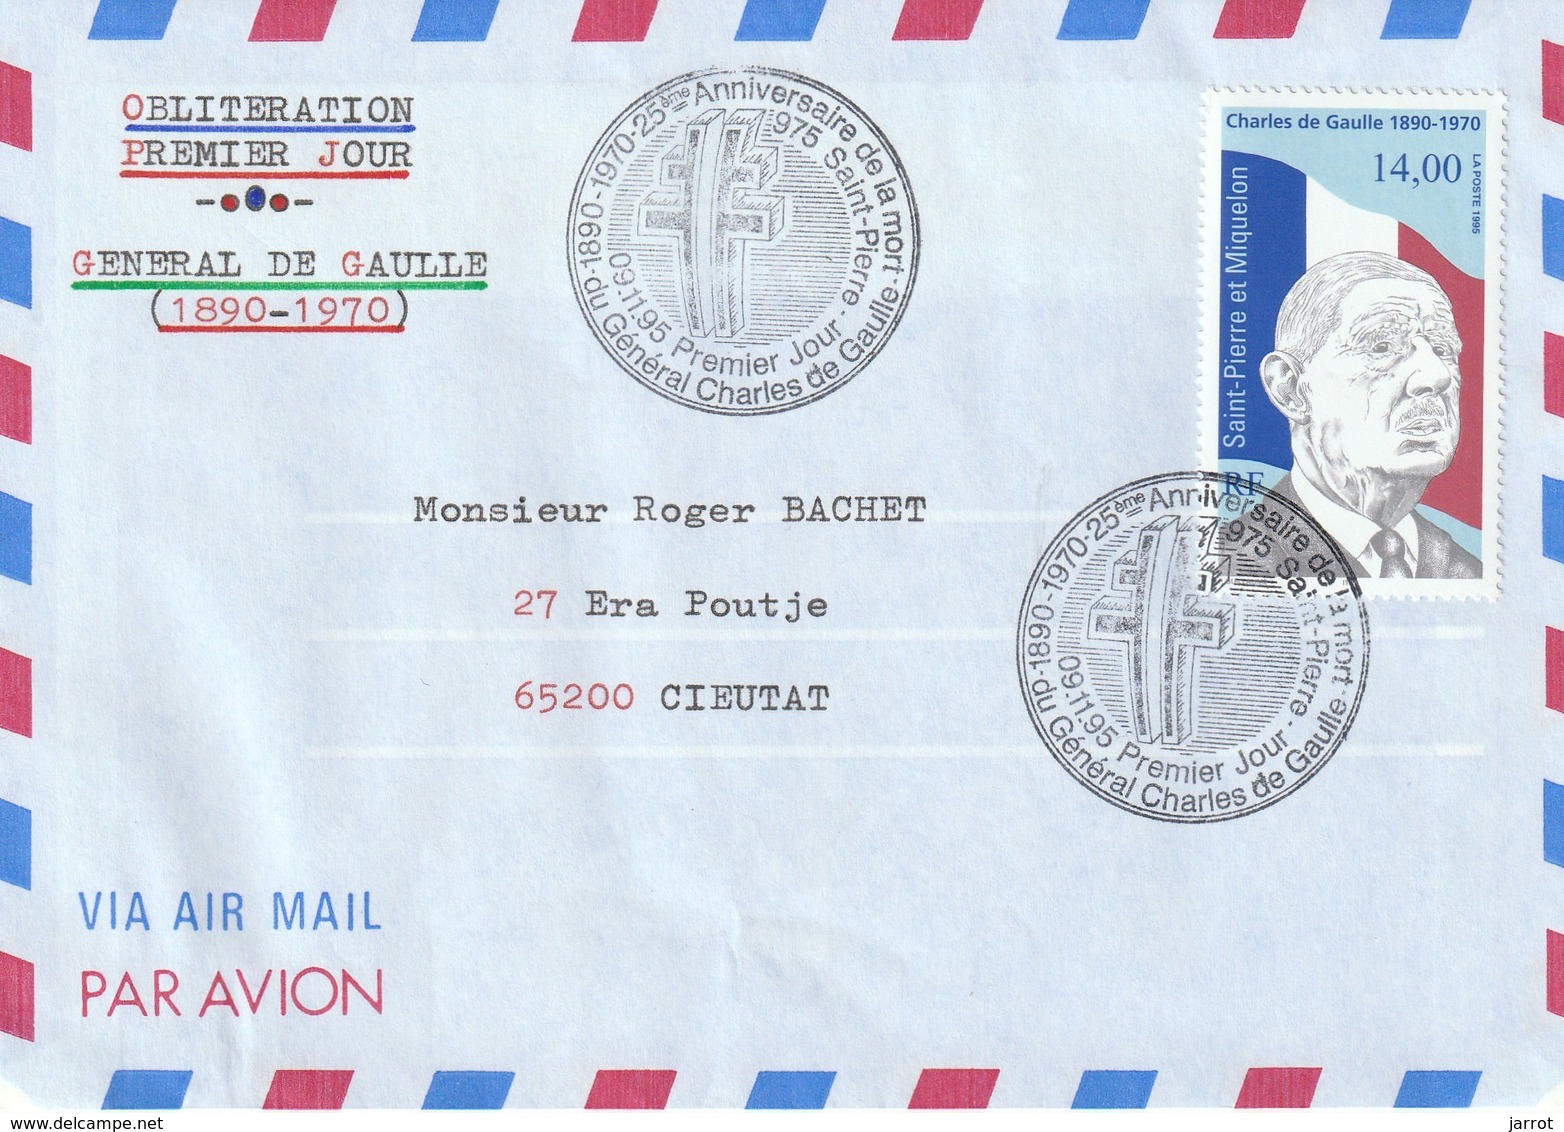 lot de 17 enveloppes 1995 dont PA ayant circulées